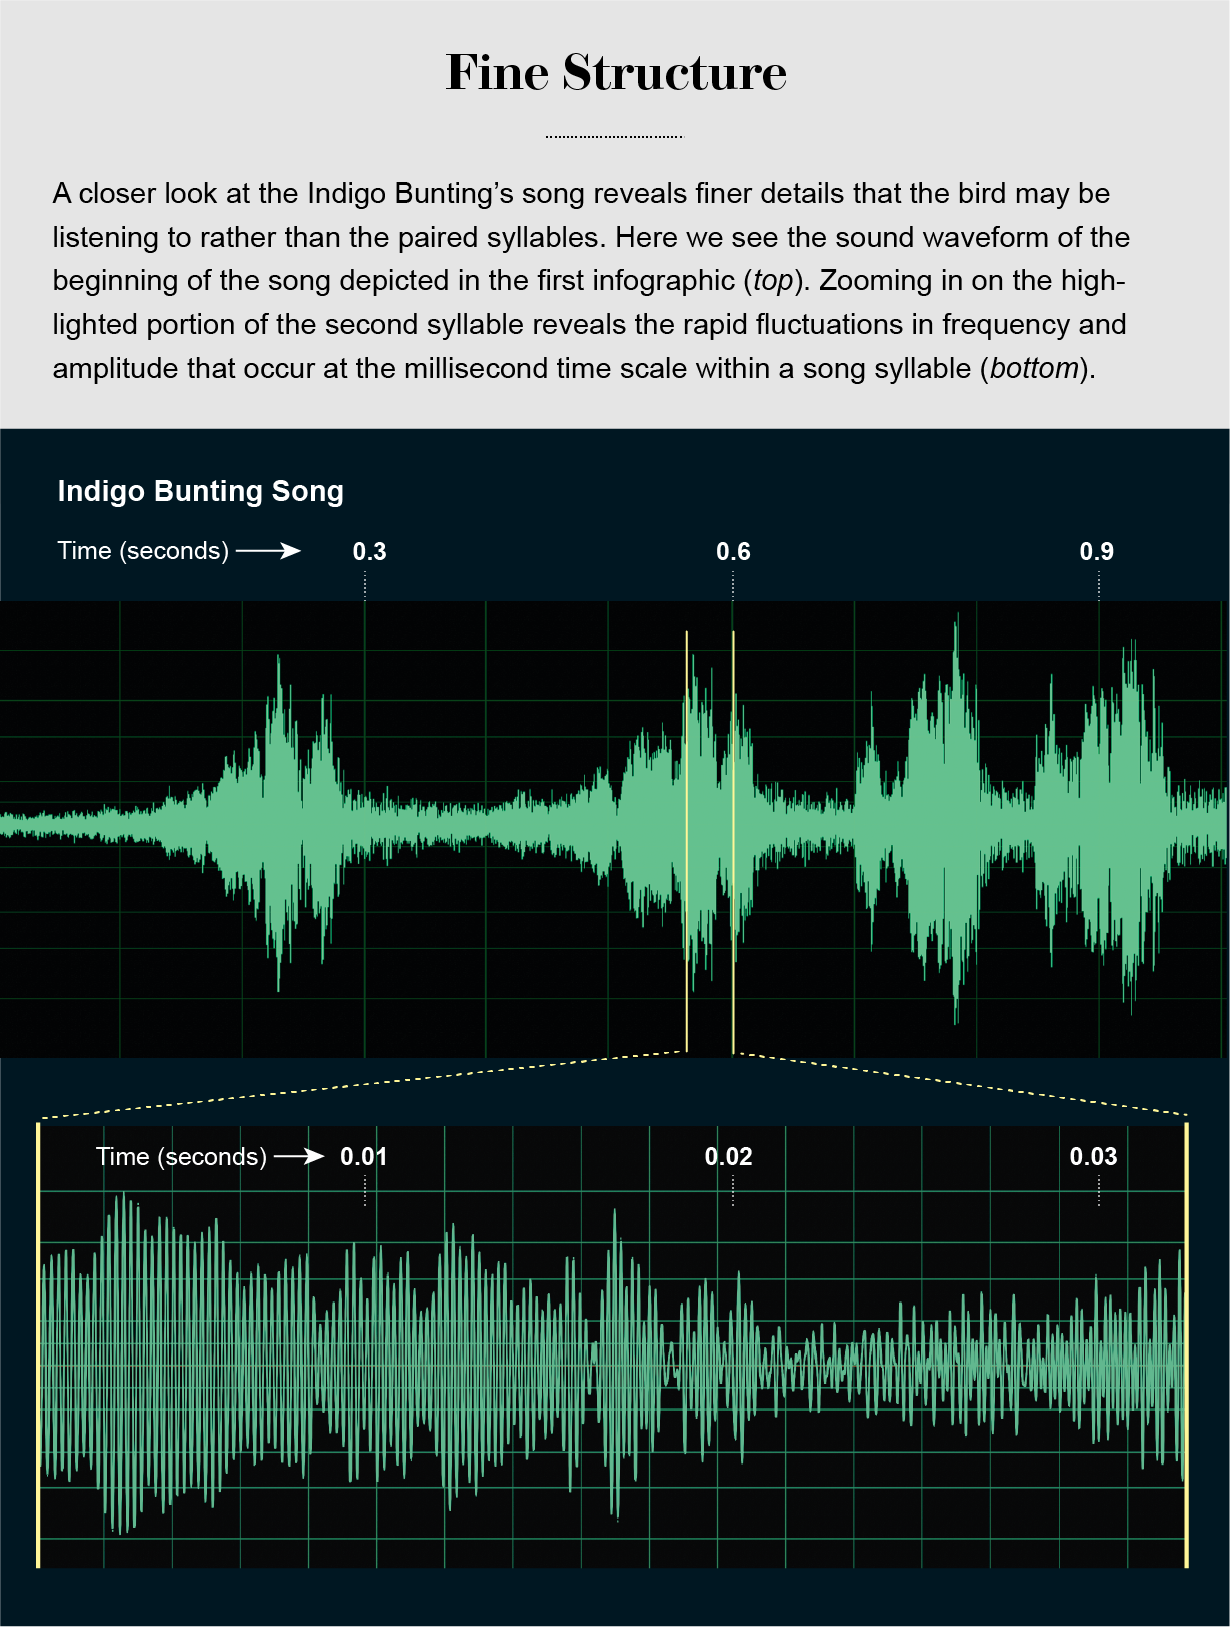 放大部分靛蓝彩旗歌曲波形显示快速频率和幅度波动在一个音节。